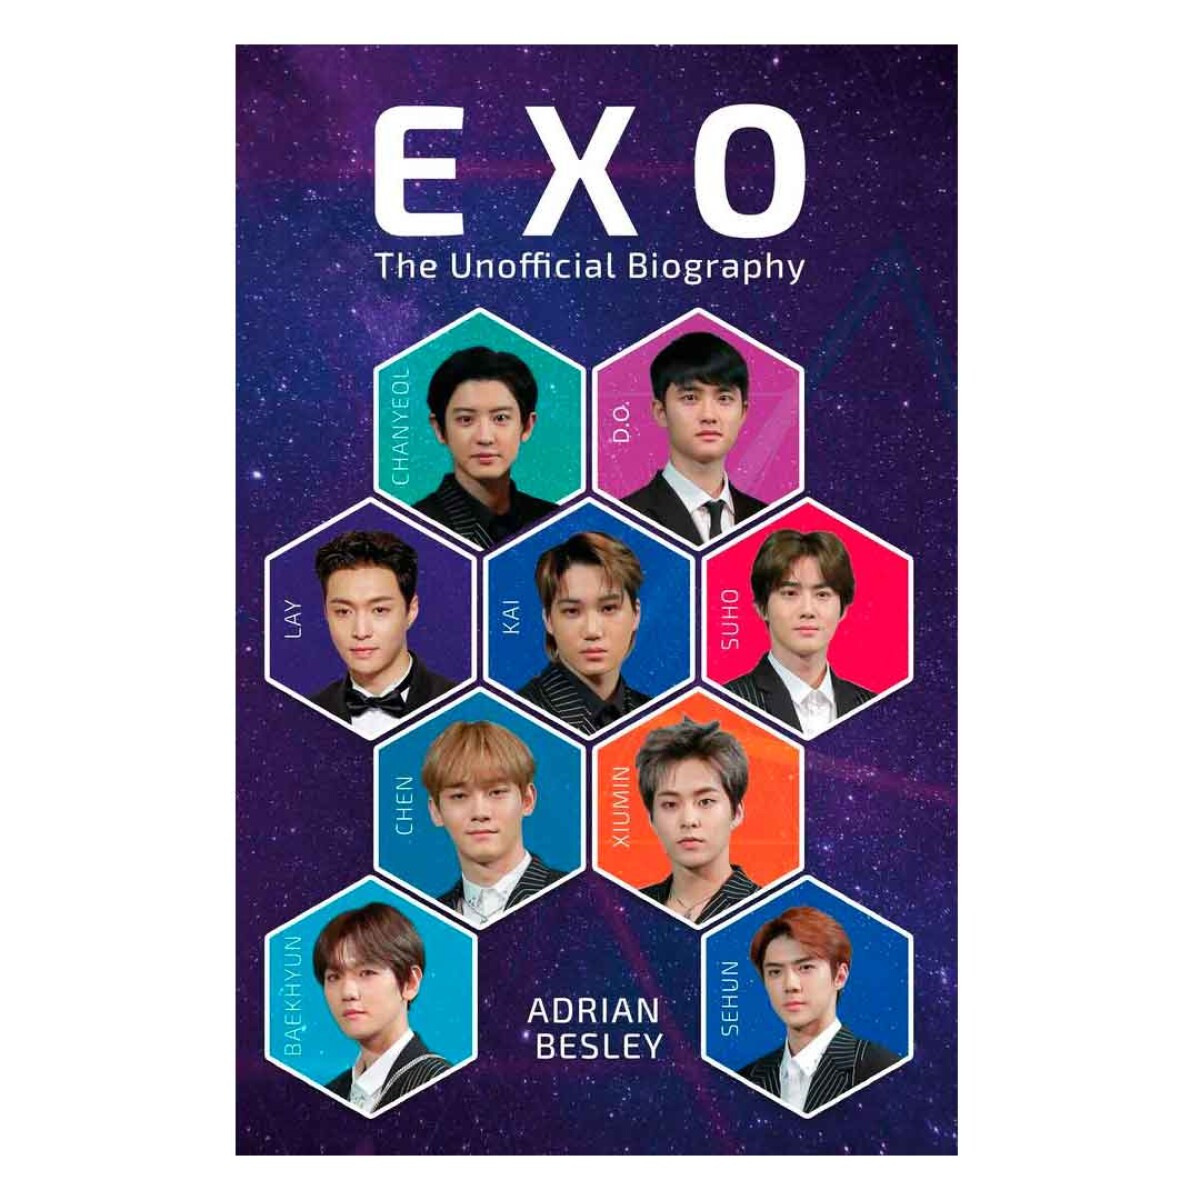 Libro biográfico de la banda EXO superstars del K-POP - 001 